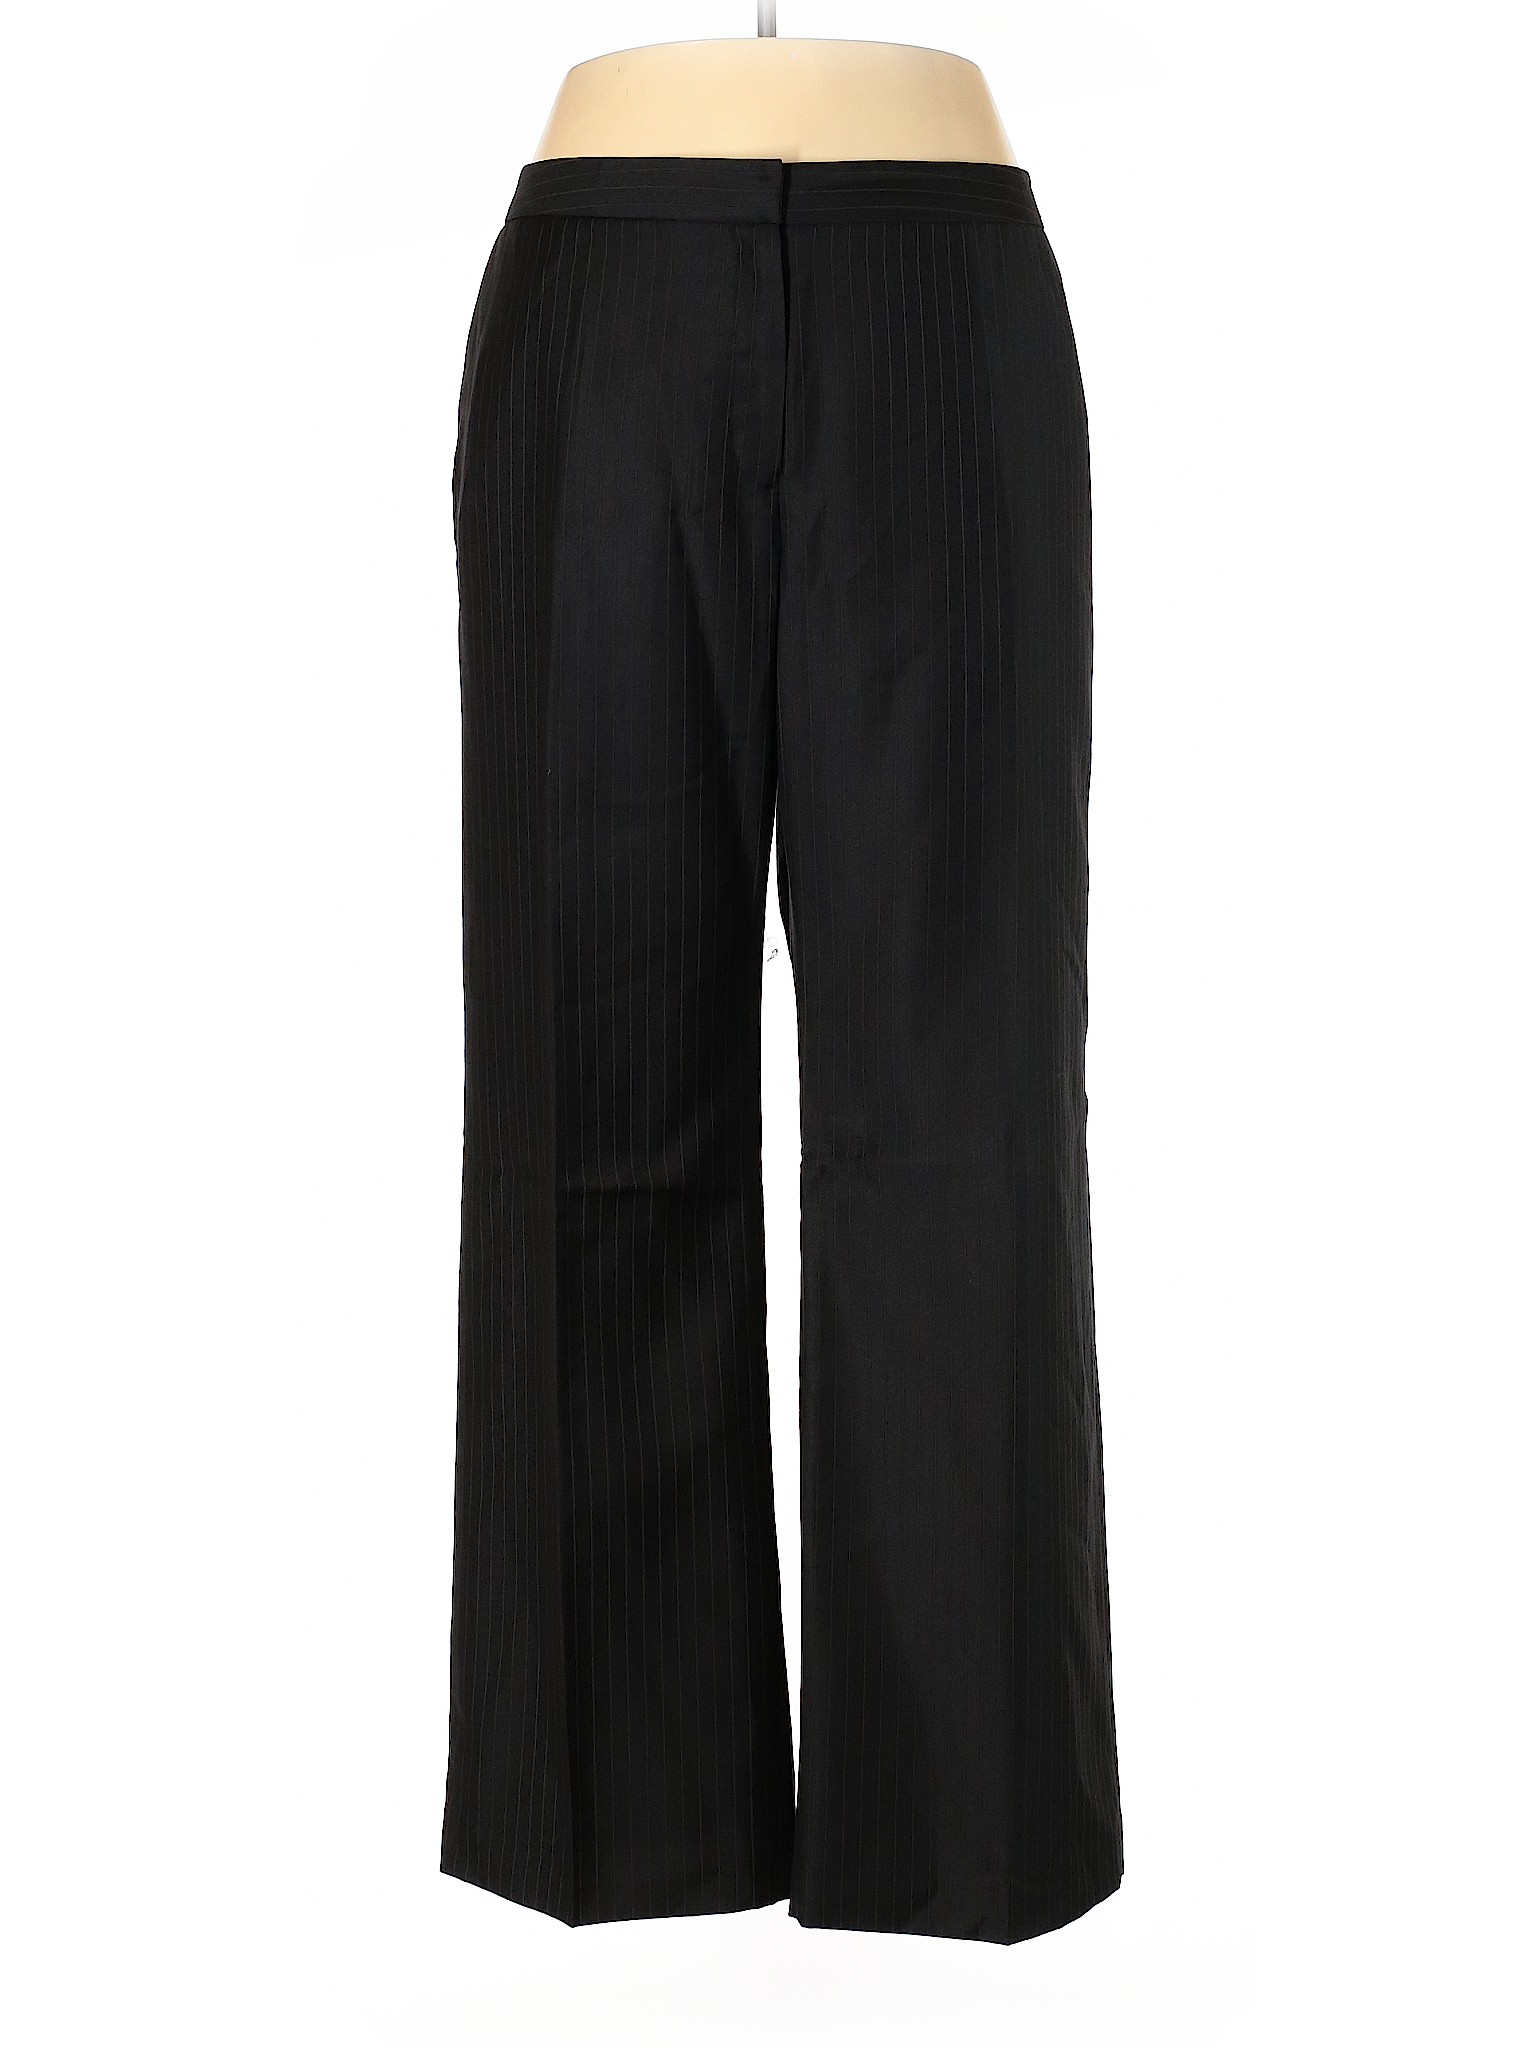 Kasper Women Black Dress Pants 18 Plus | eBay